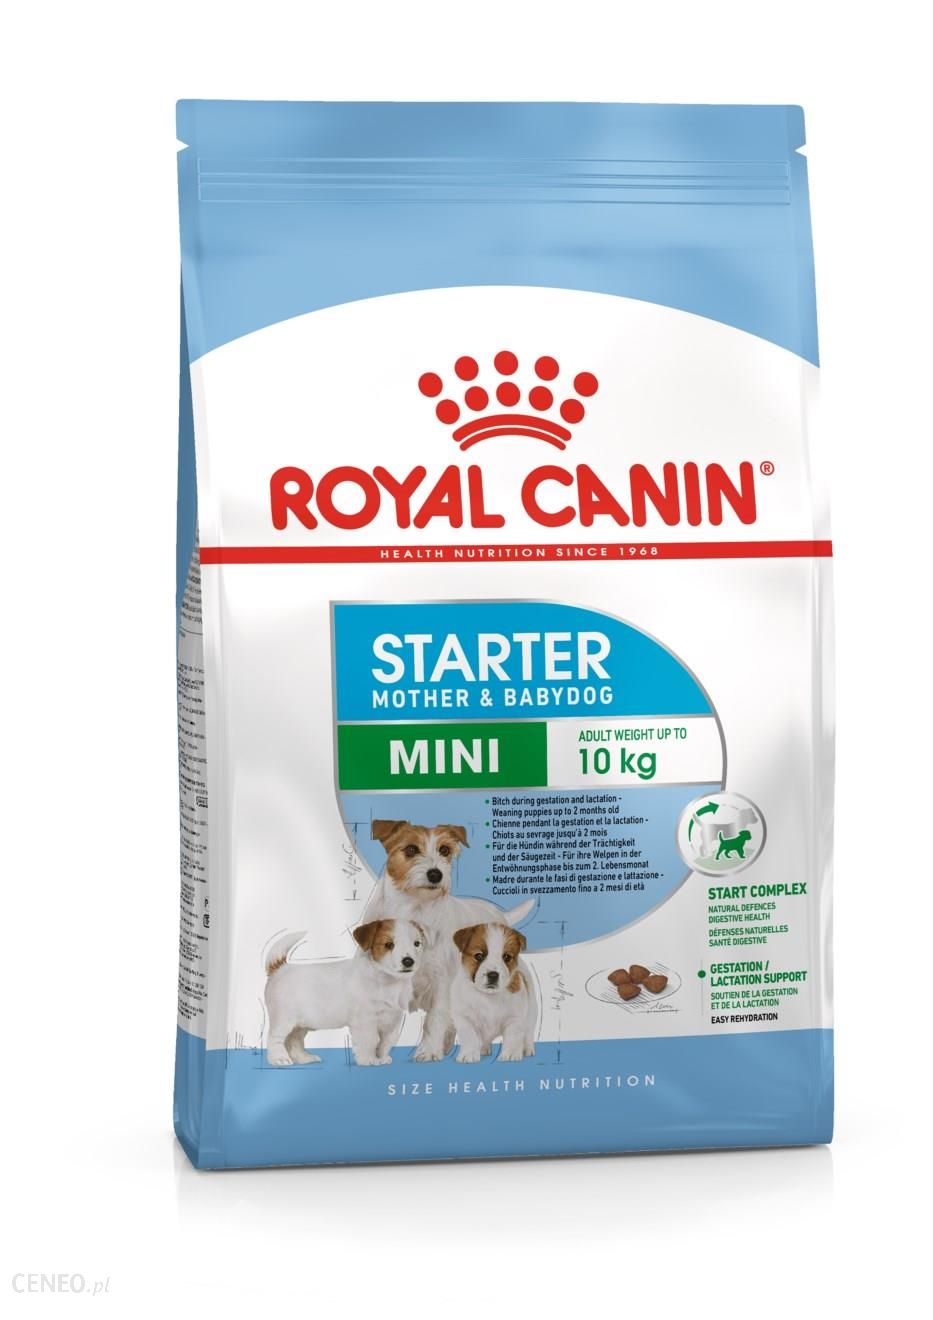 Royal Canin Mini Starter Mother & Babydog 3kg